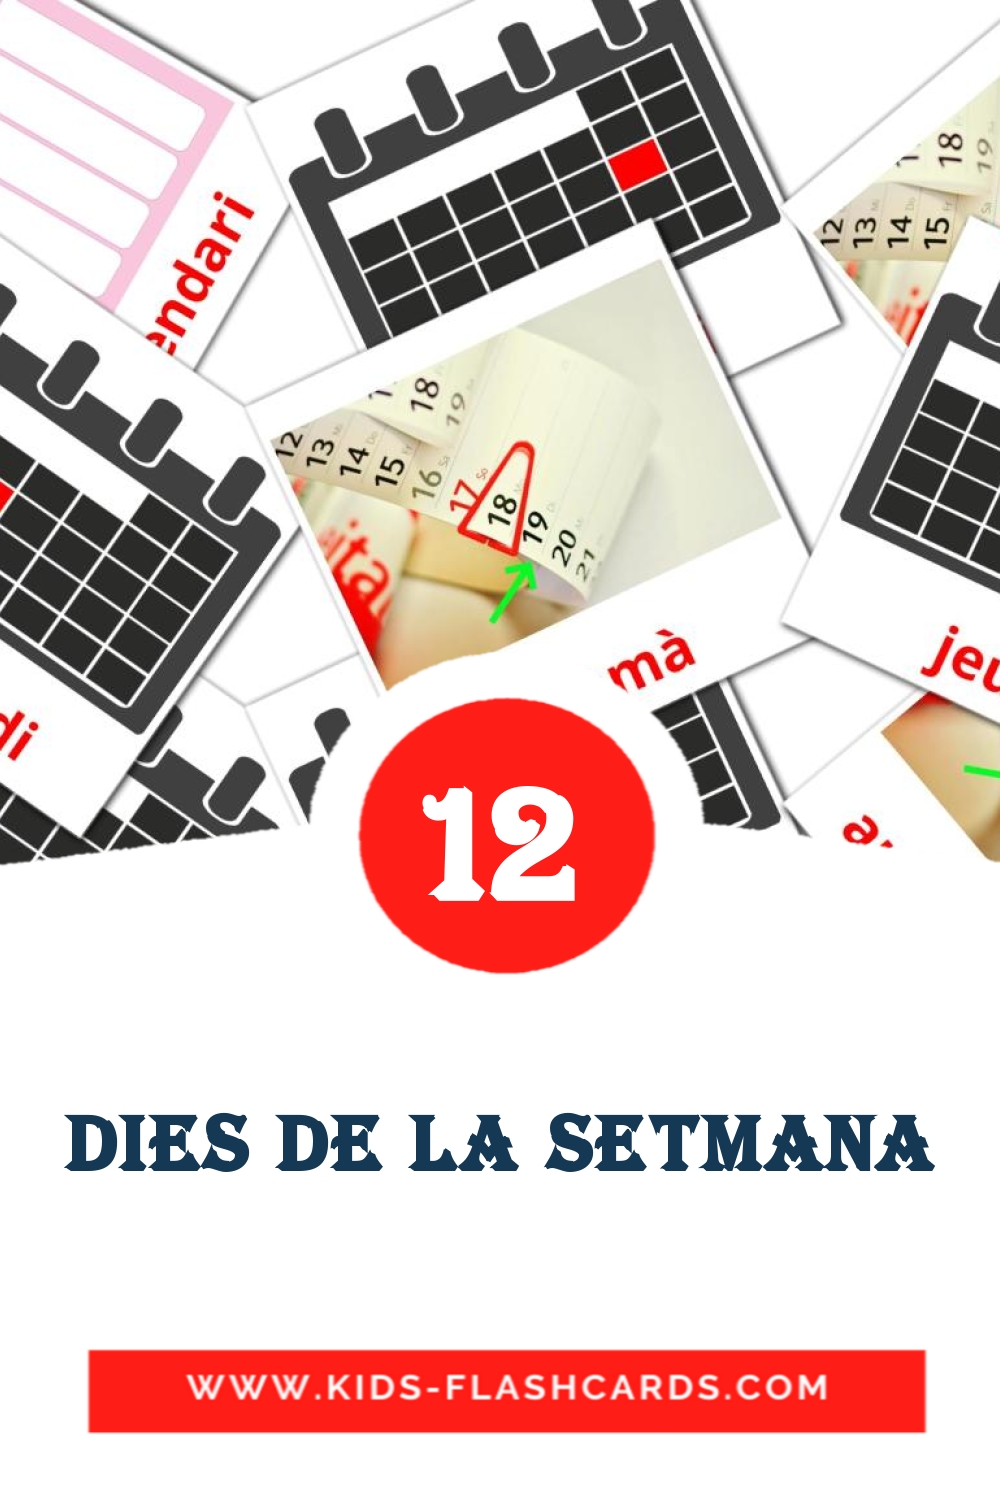 12 tarjetas didacticas de Dies de la setmana para el jardín de infancia en catalán